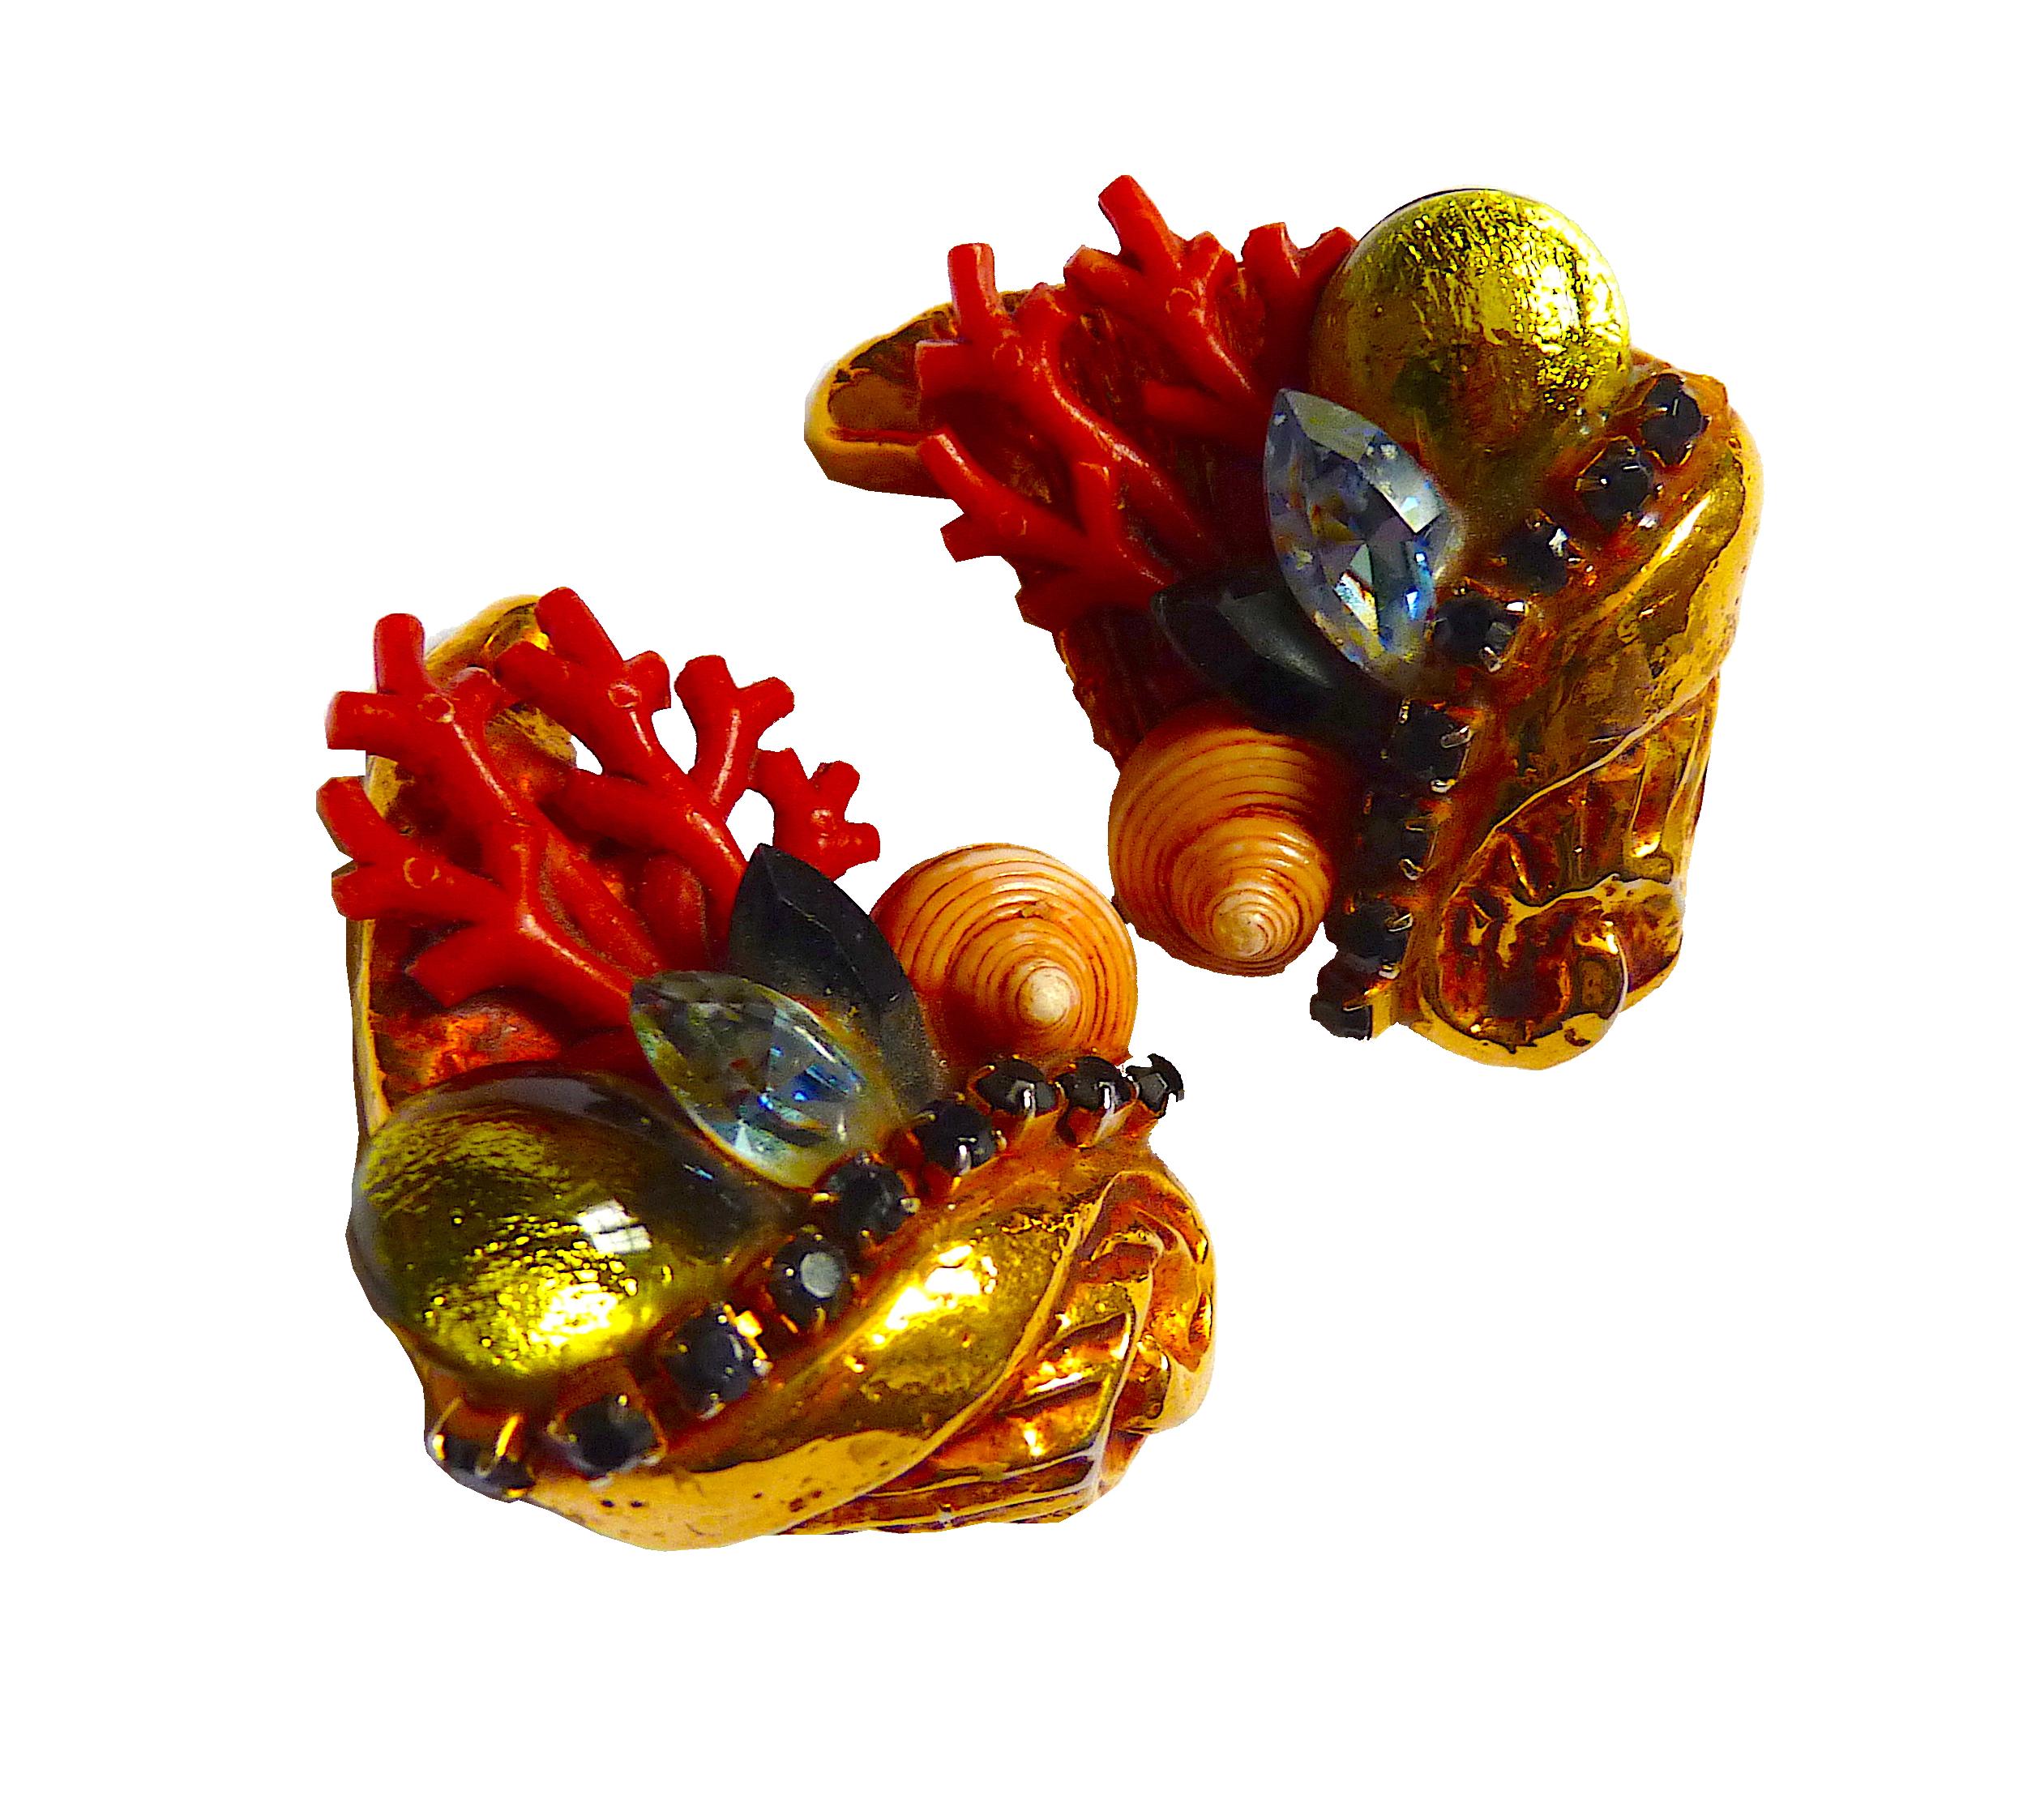 Kalinger Paris Ohrclips aus goldfarbenem Metall, verziert mit exquisiten natürlichen Muscheln, roten und grünen Glasperlen, blauen und grünen Kristallen, Vintage aus den 1980er Jahren

Signiert KALINGER PARIS auf der Rückseite jedes Clips

Zustand: